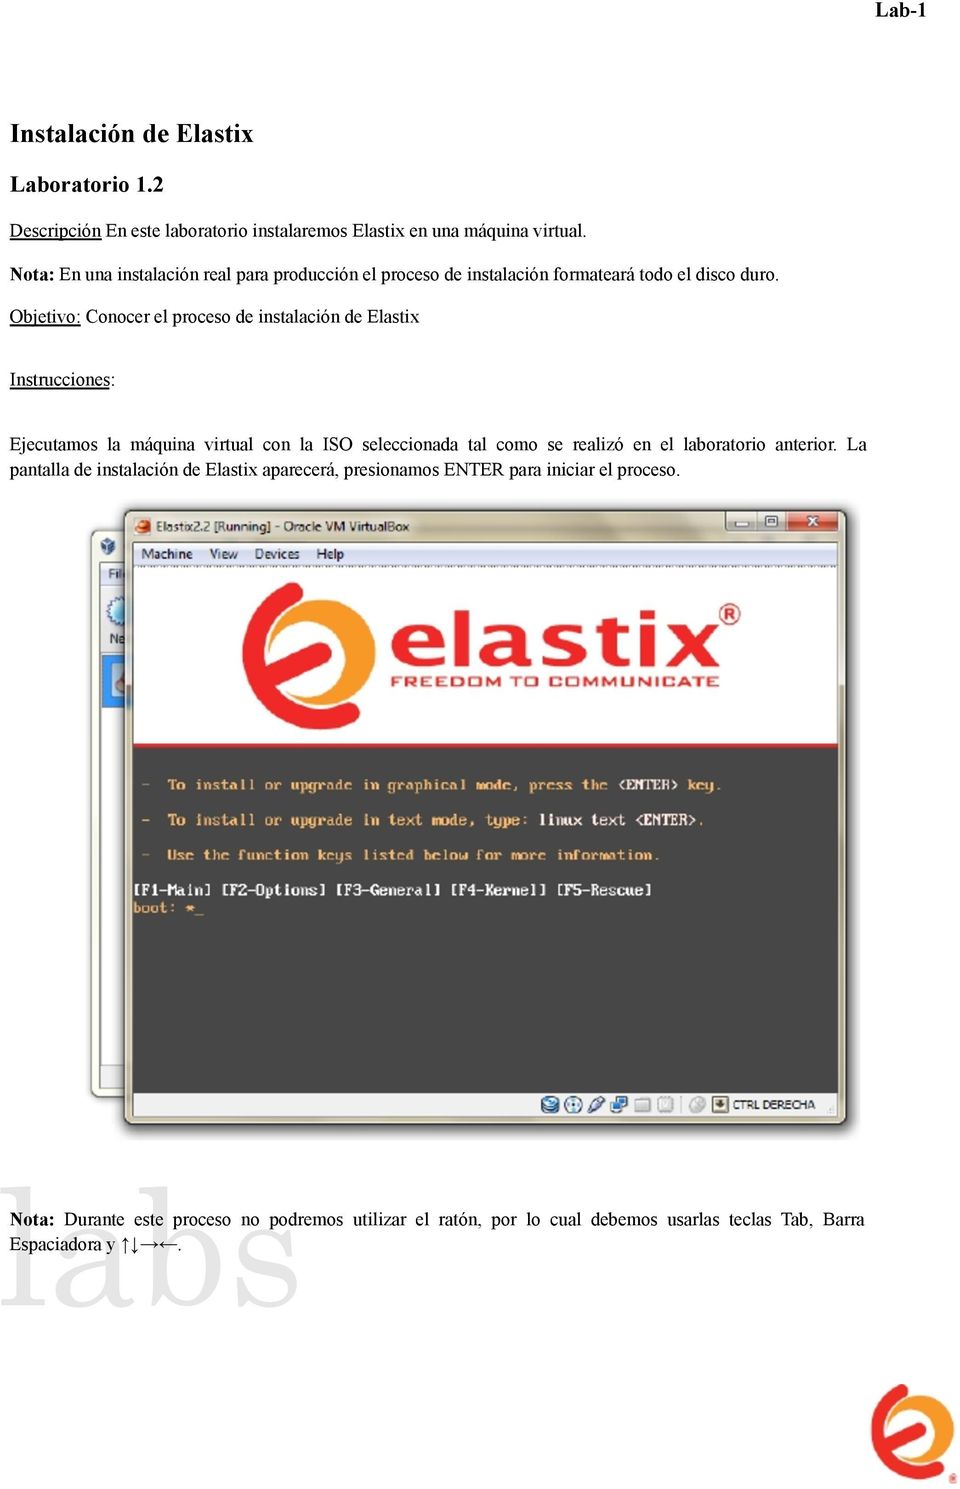 Objetivo: Conocer el proceso de instalación de Elastix Instrucciones: Ejecutamos la máquina virtual con la ISO seleccionada tal como se realizó en el